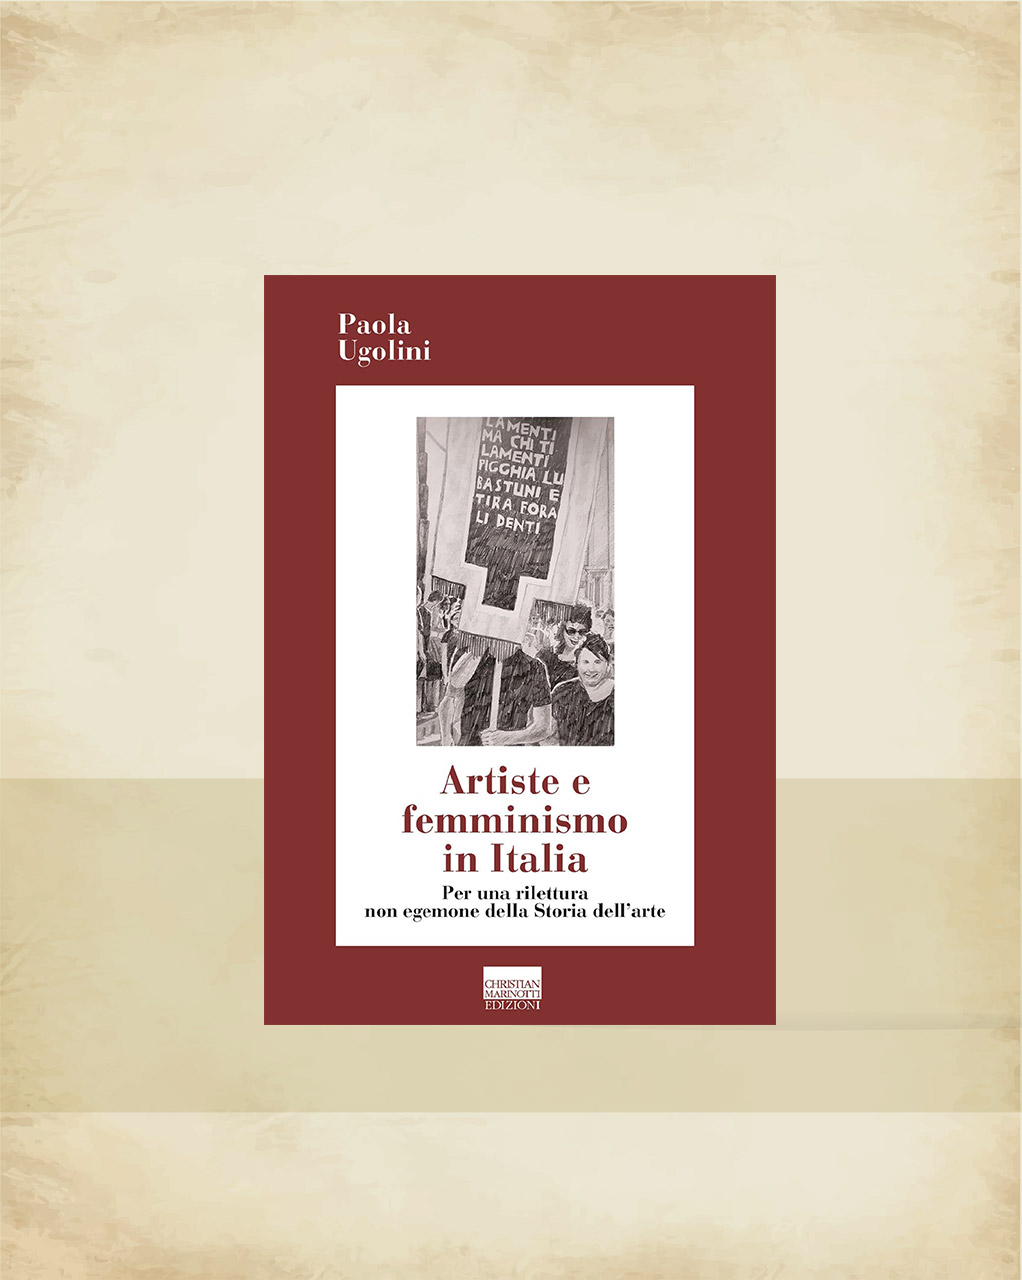 Copertina del libro di Paola Ugolini "ARTISTE E FEMMINISMO IN ITALIA"